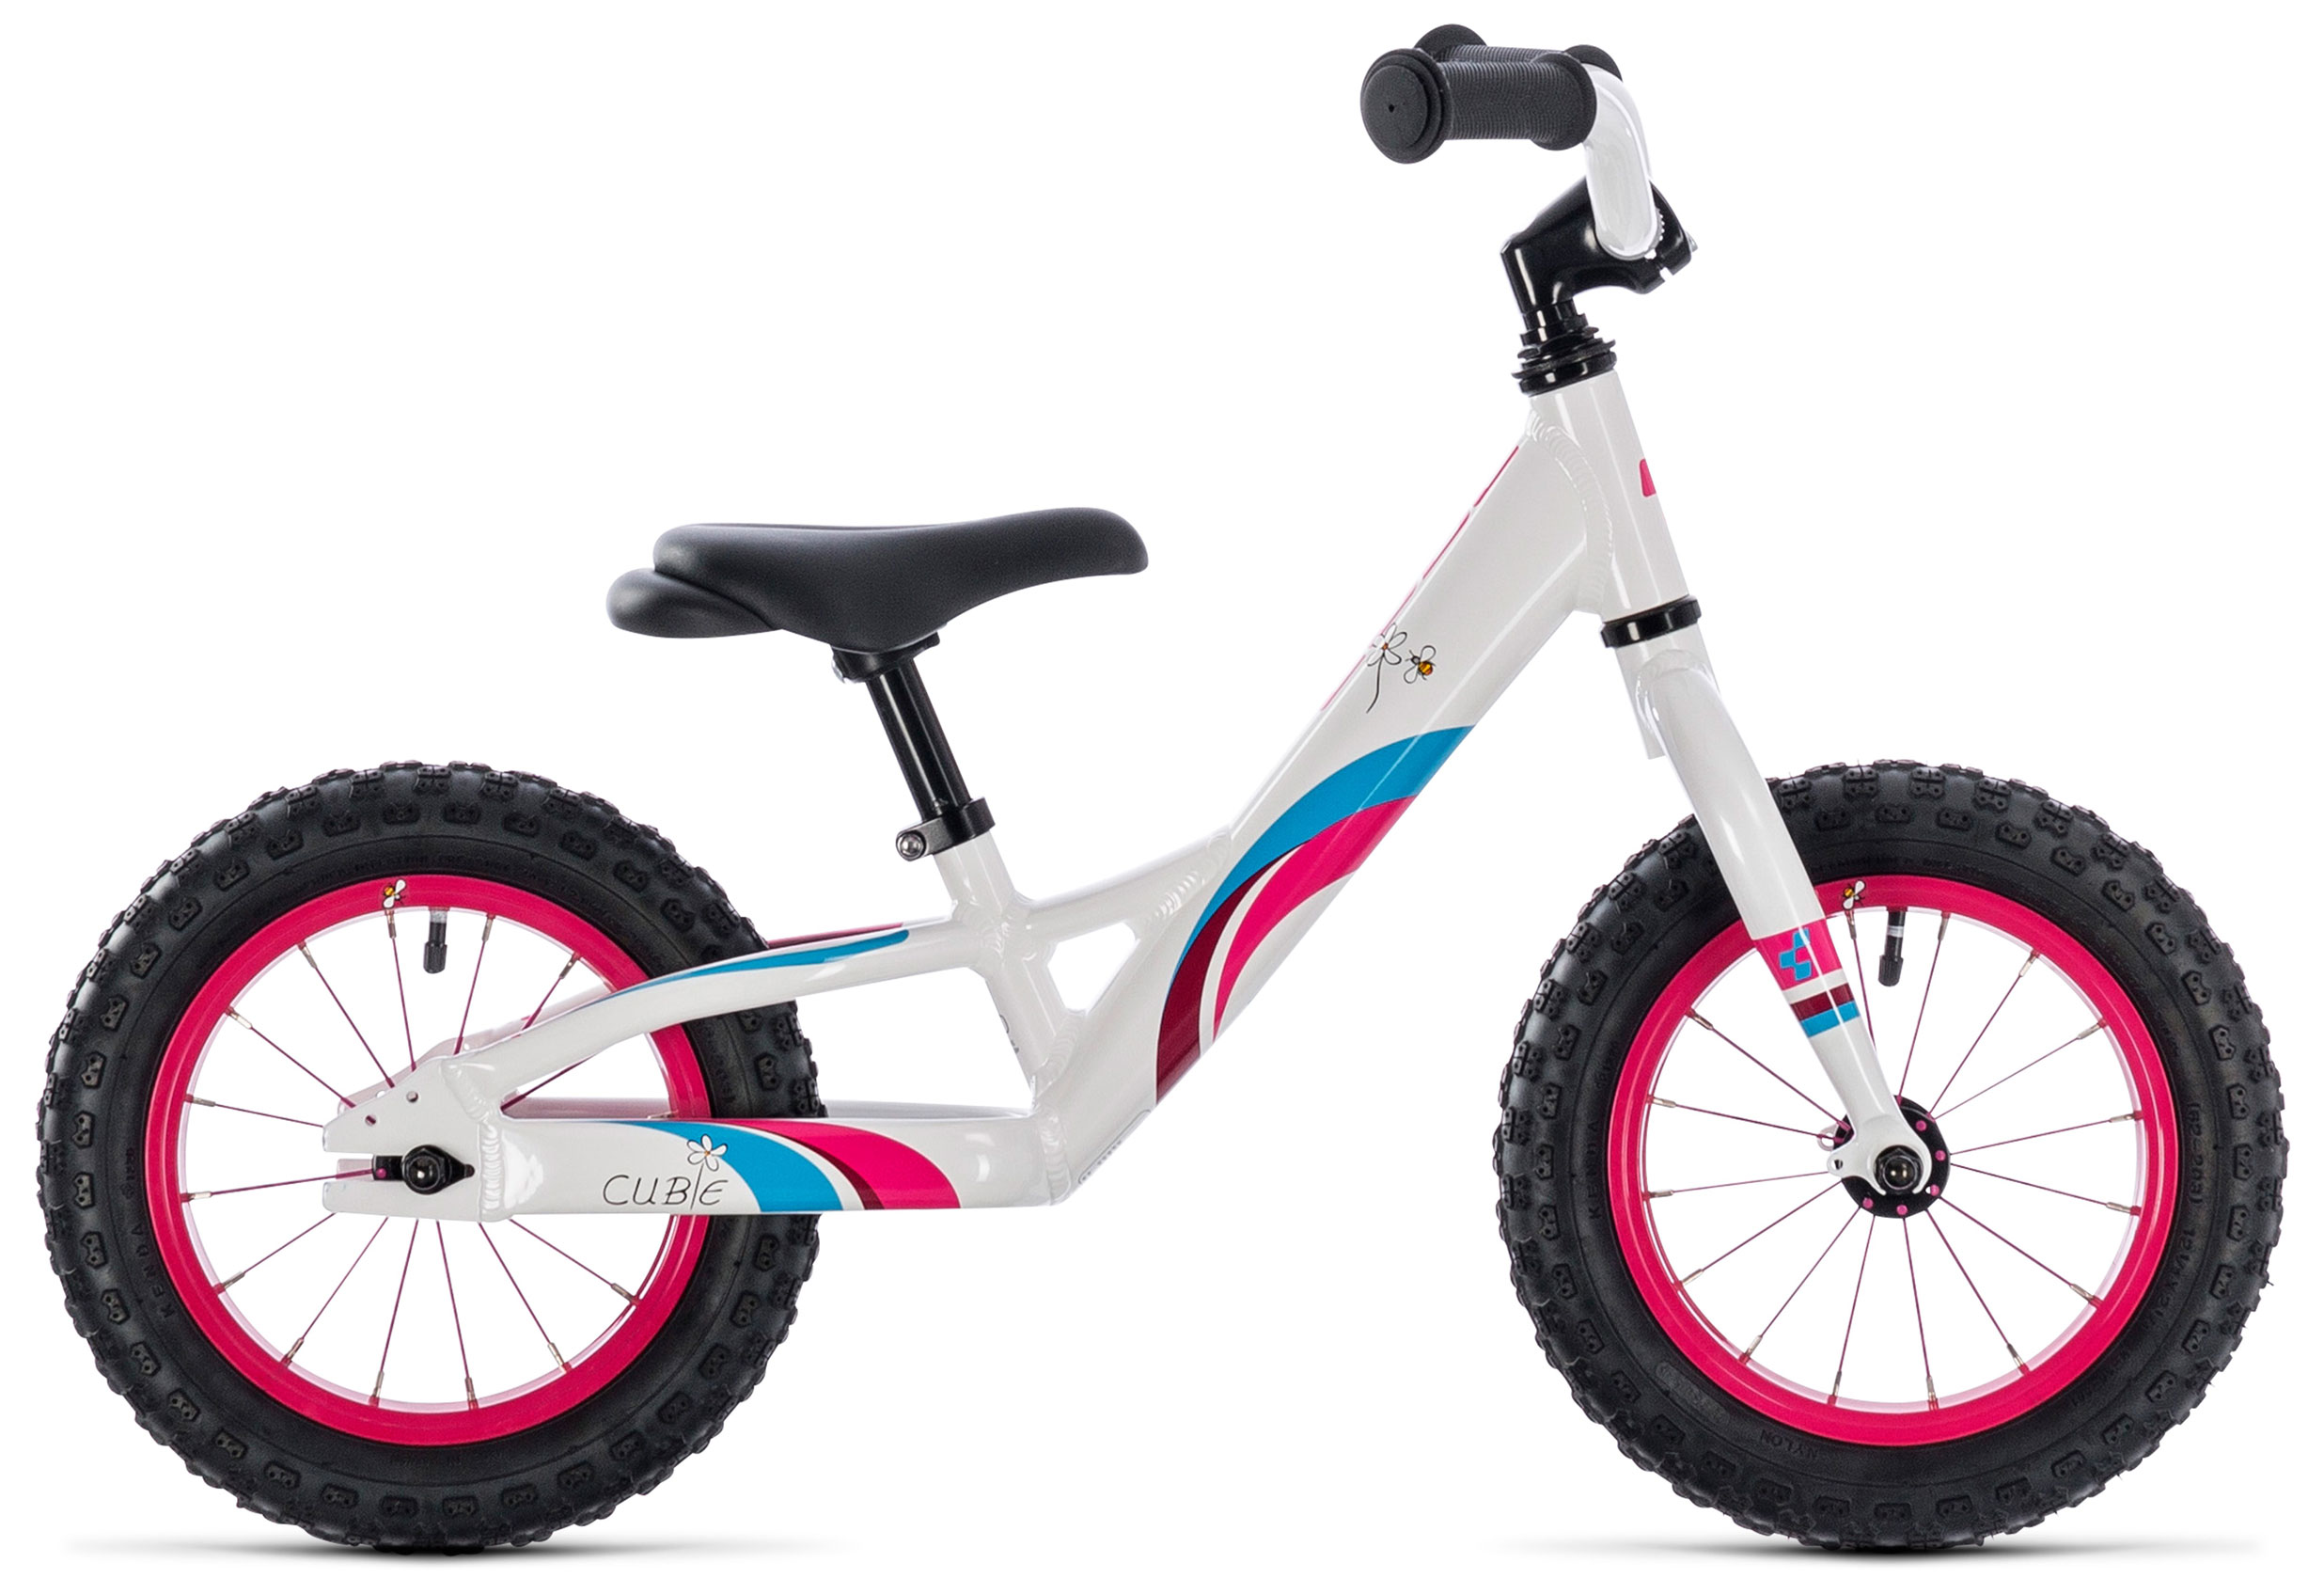  Отзывы о Детском велосипеде Cube Cubie 120 Walk Girl 2019